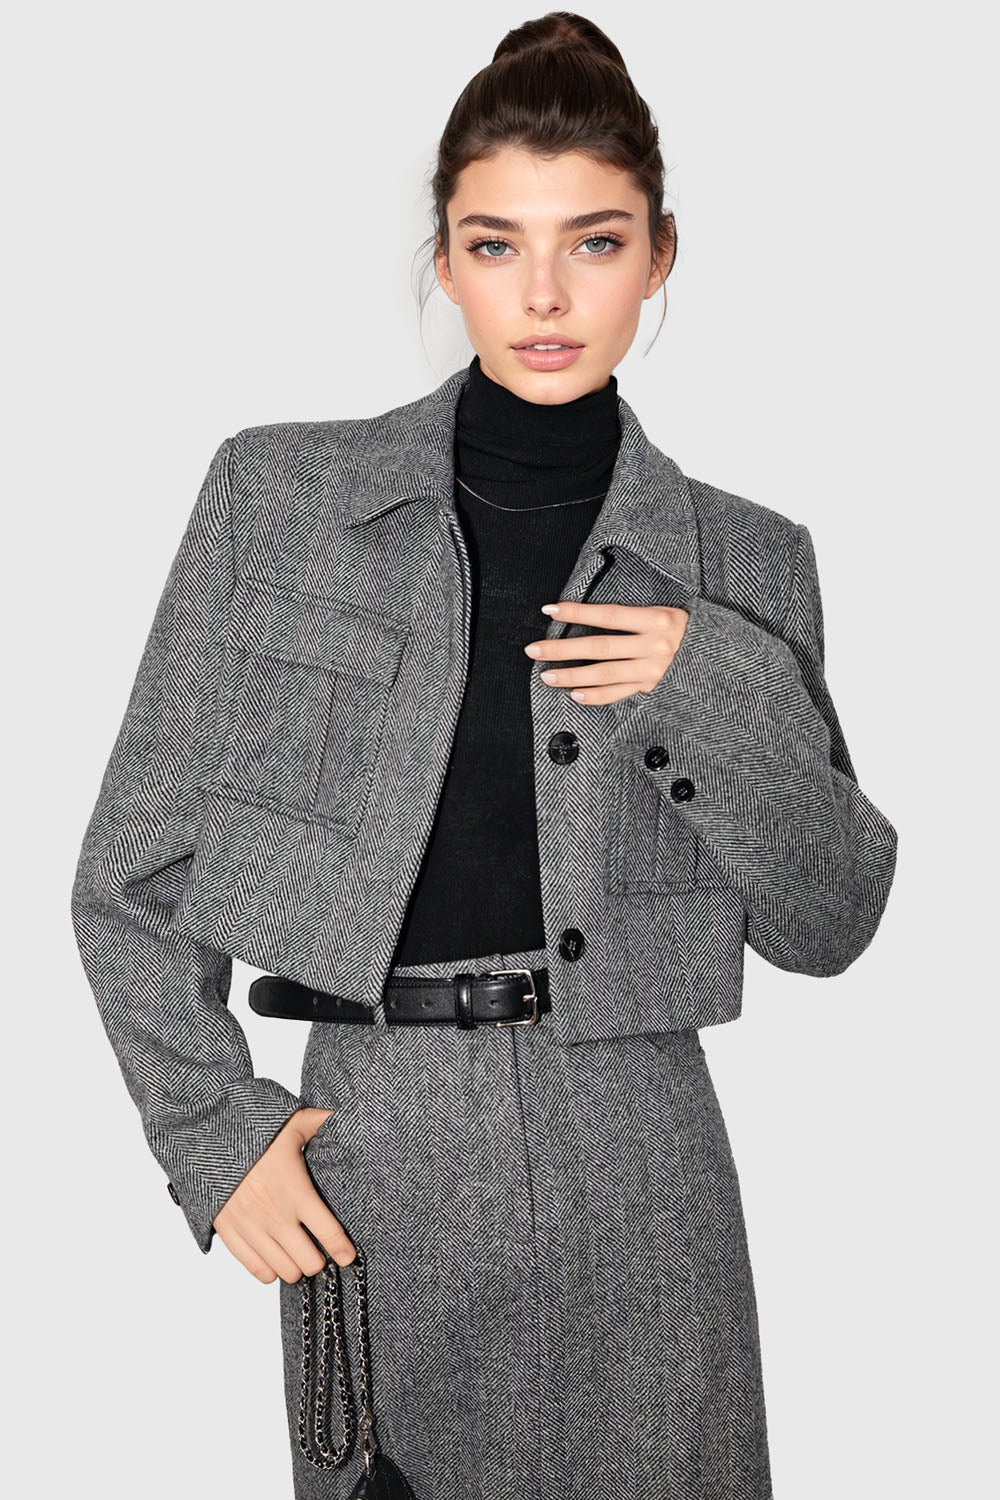 Kort tekstureret jakke med lommer - grå